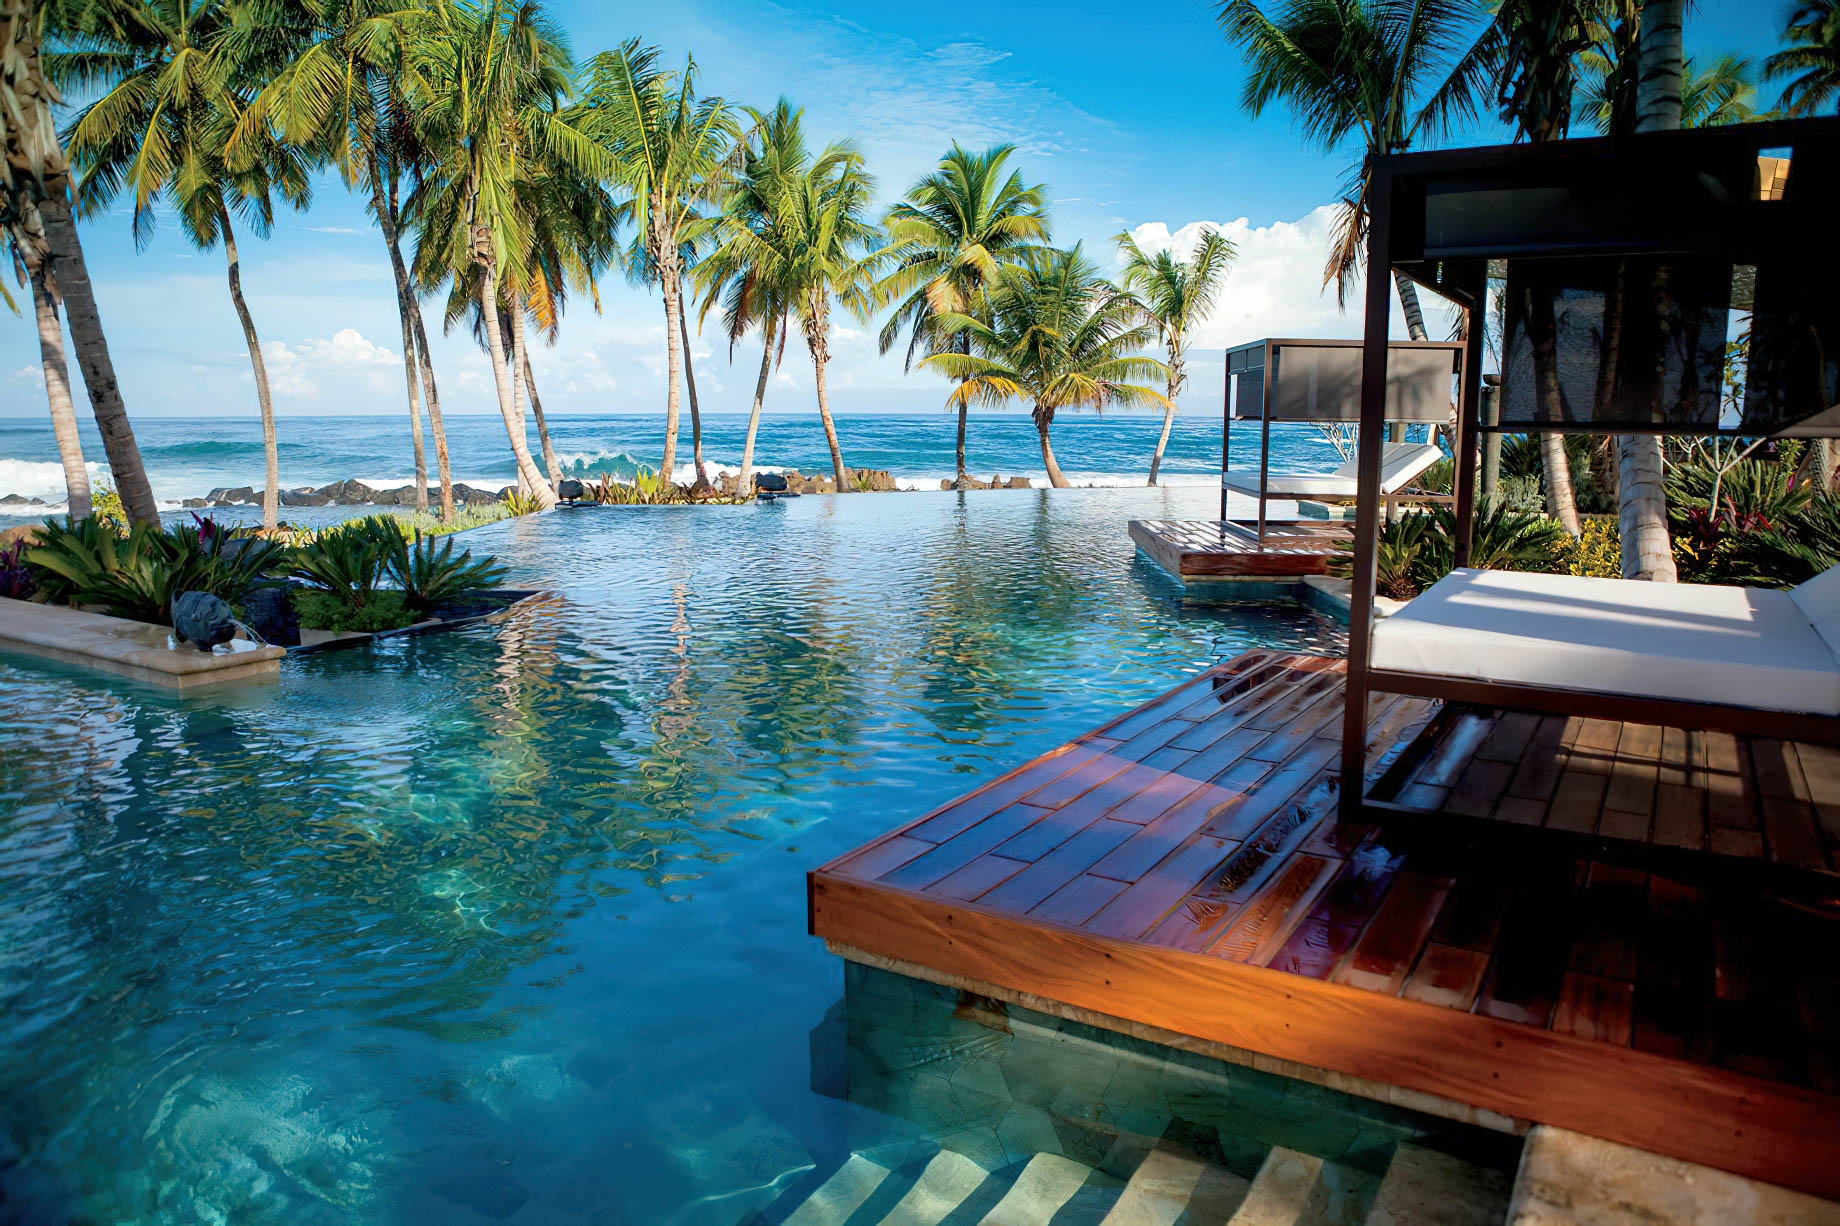 The Ritz-Carlton, Dorado Beach Reserve Resort – Puerto Rico – Positivo Pool Lounge Deck Ocean View